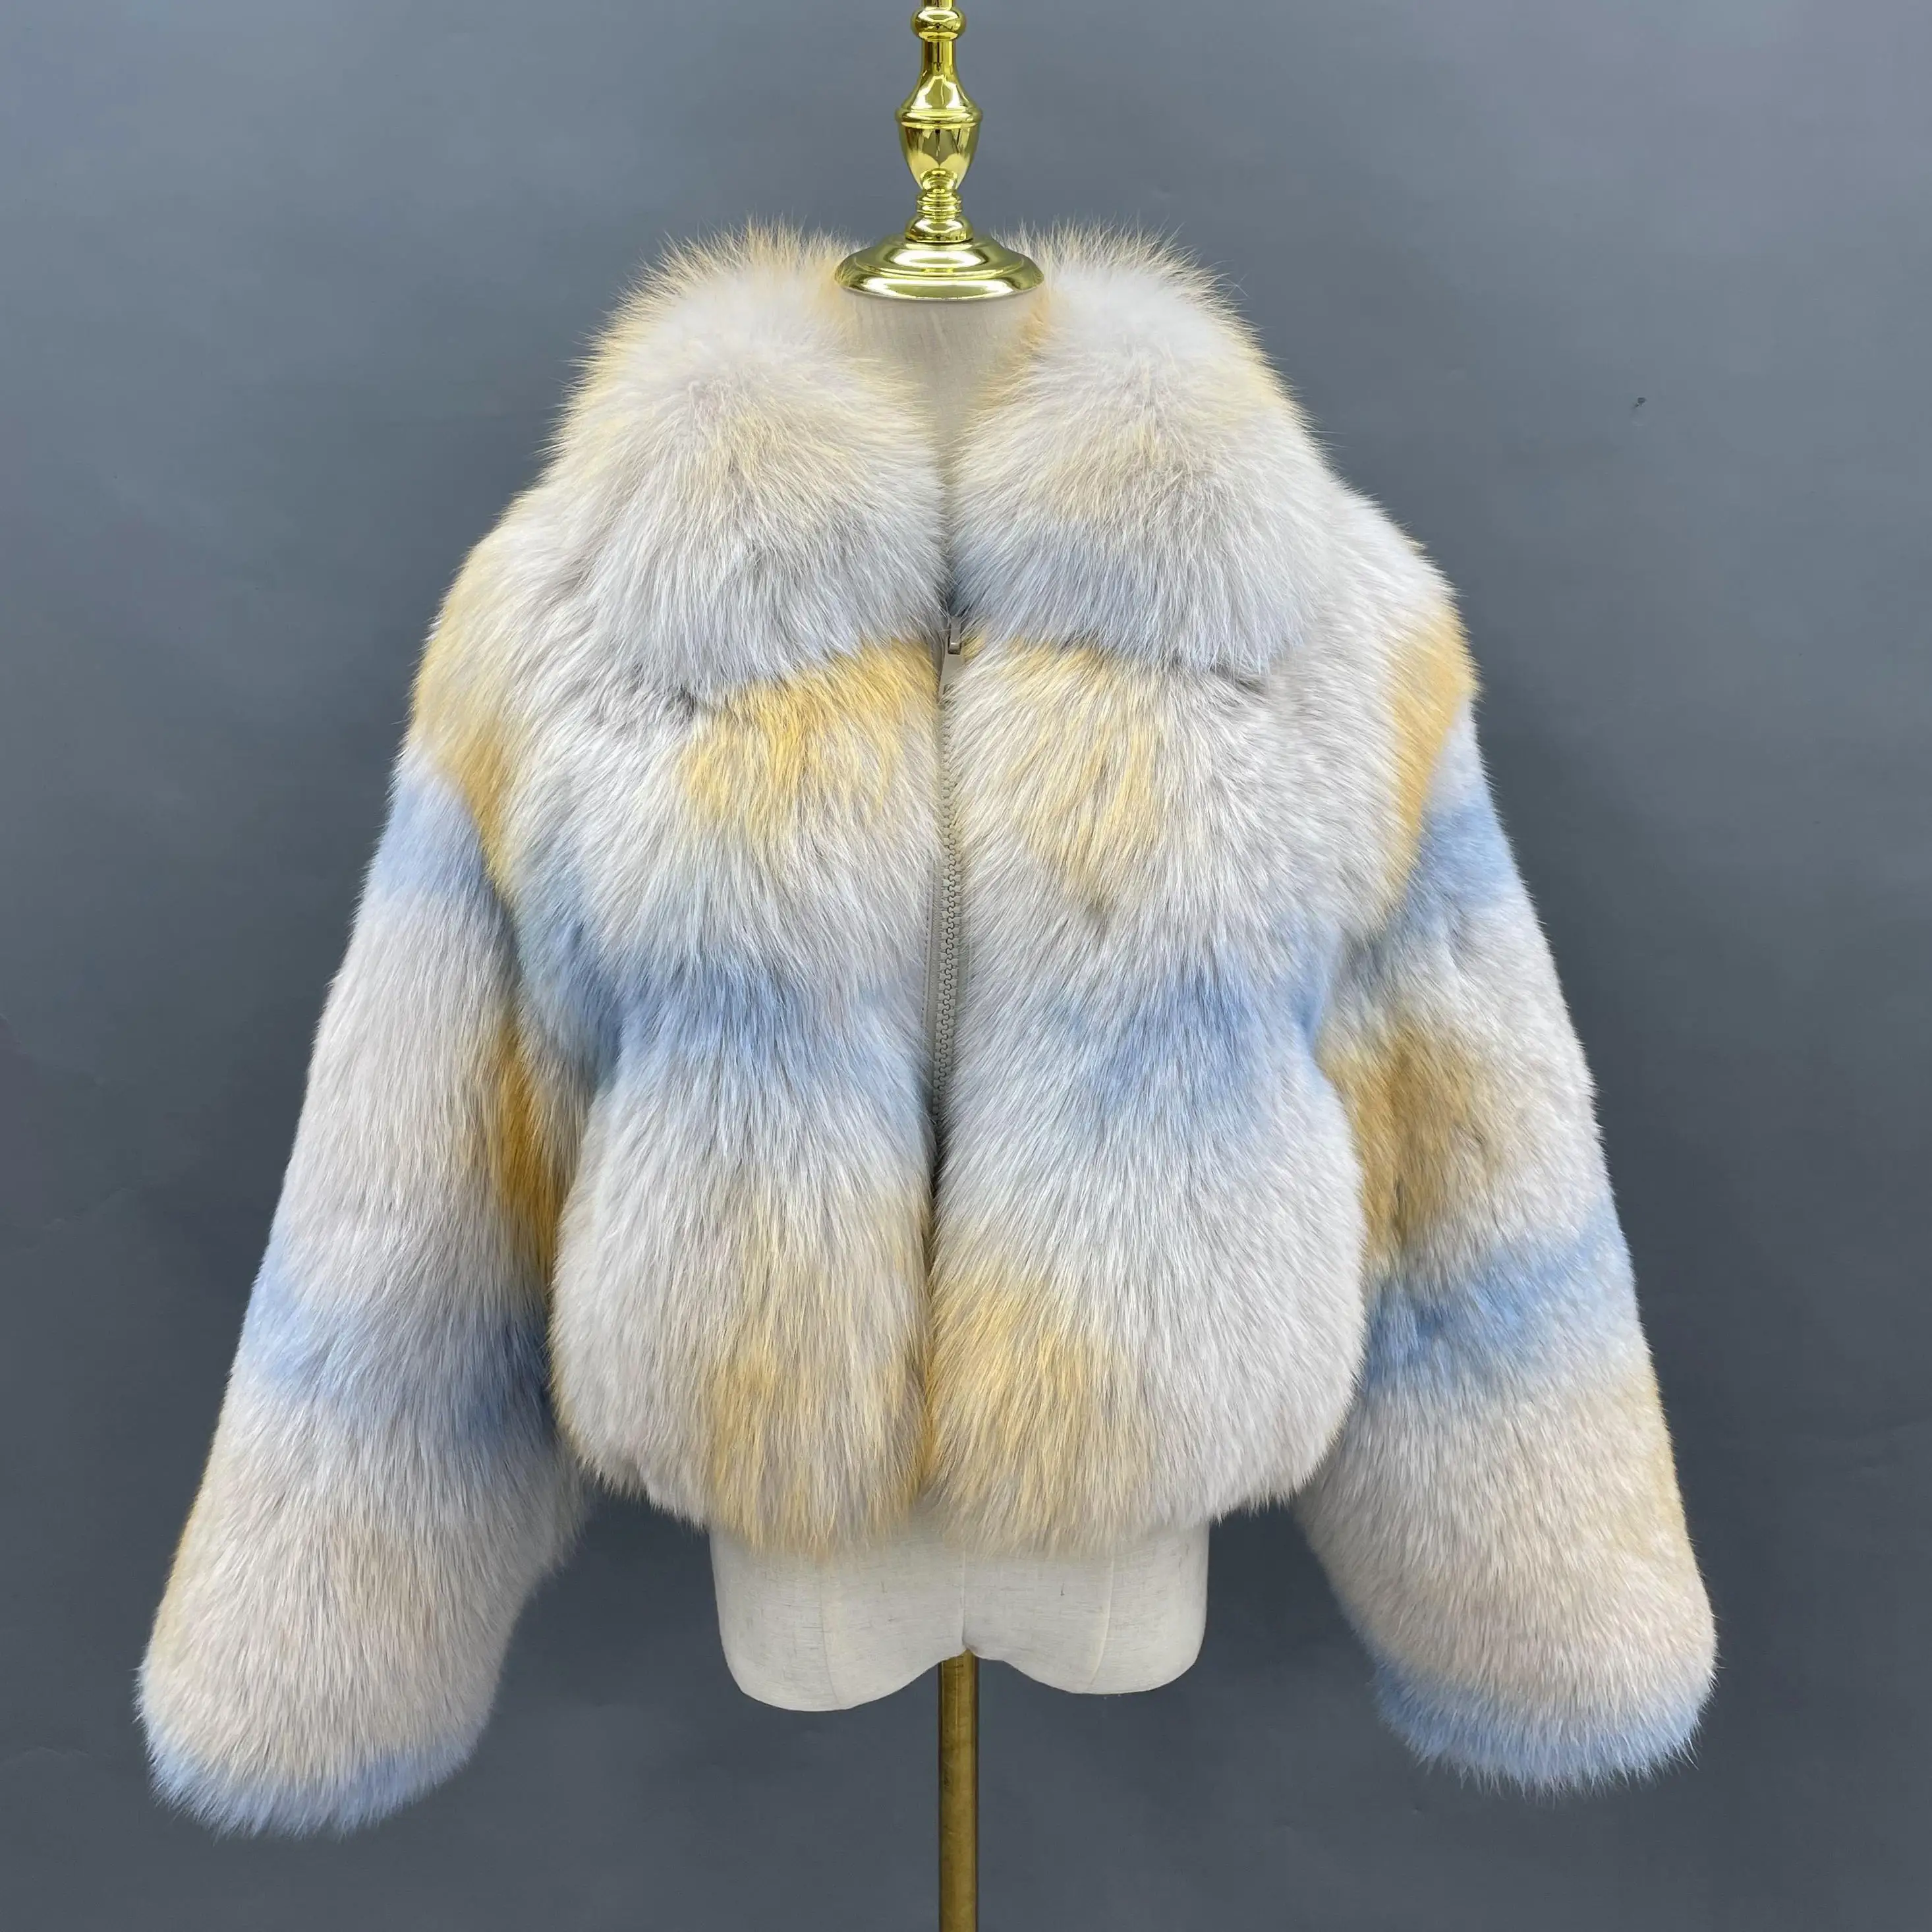 Turn-aşağı yaka reçine desen fermuar tüm deri tilki kazak ceket kadın tilki kürk ceket kırpılmış